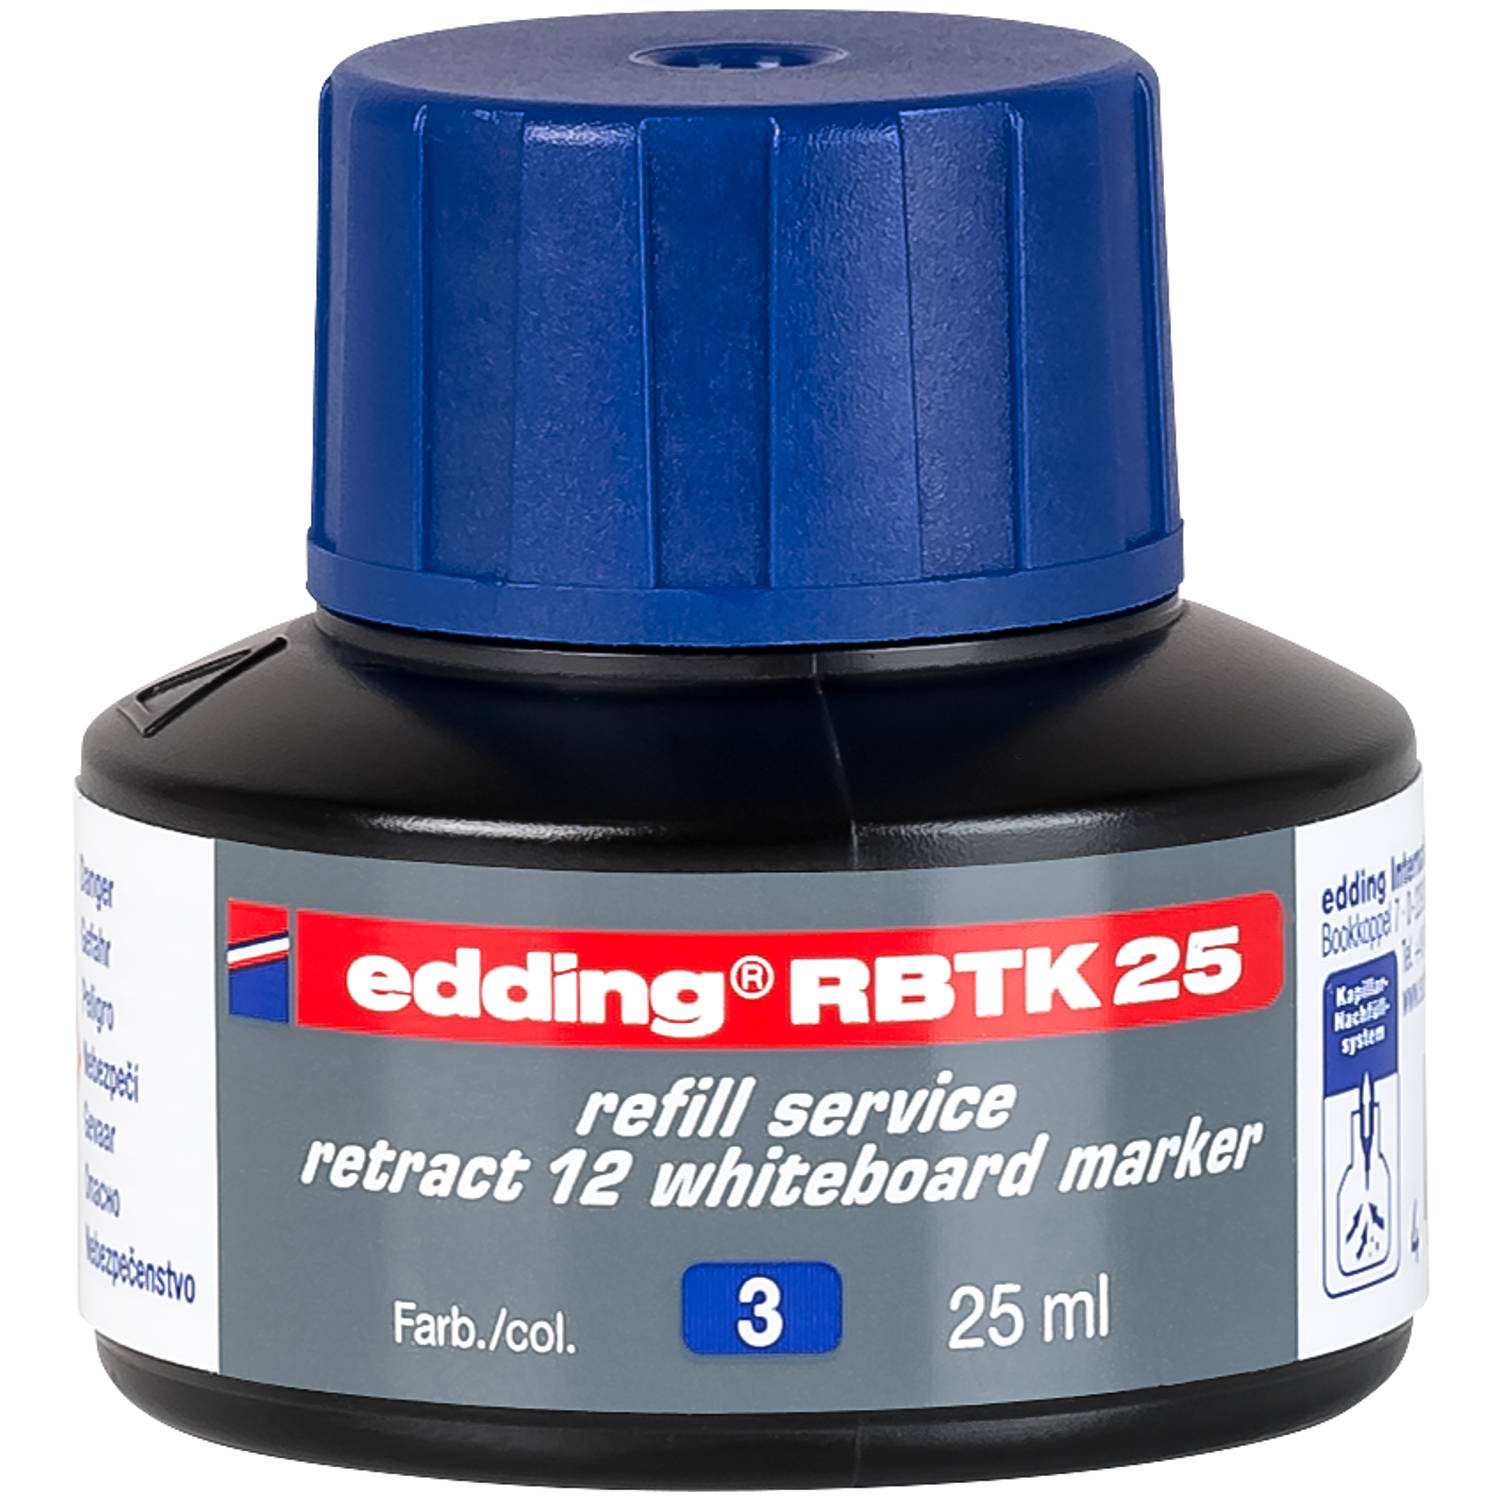 edding RBTK 25 (25 ml) navulinkt voor boardmarkers o.a. e-12 kleur; blauw potje